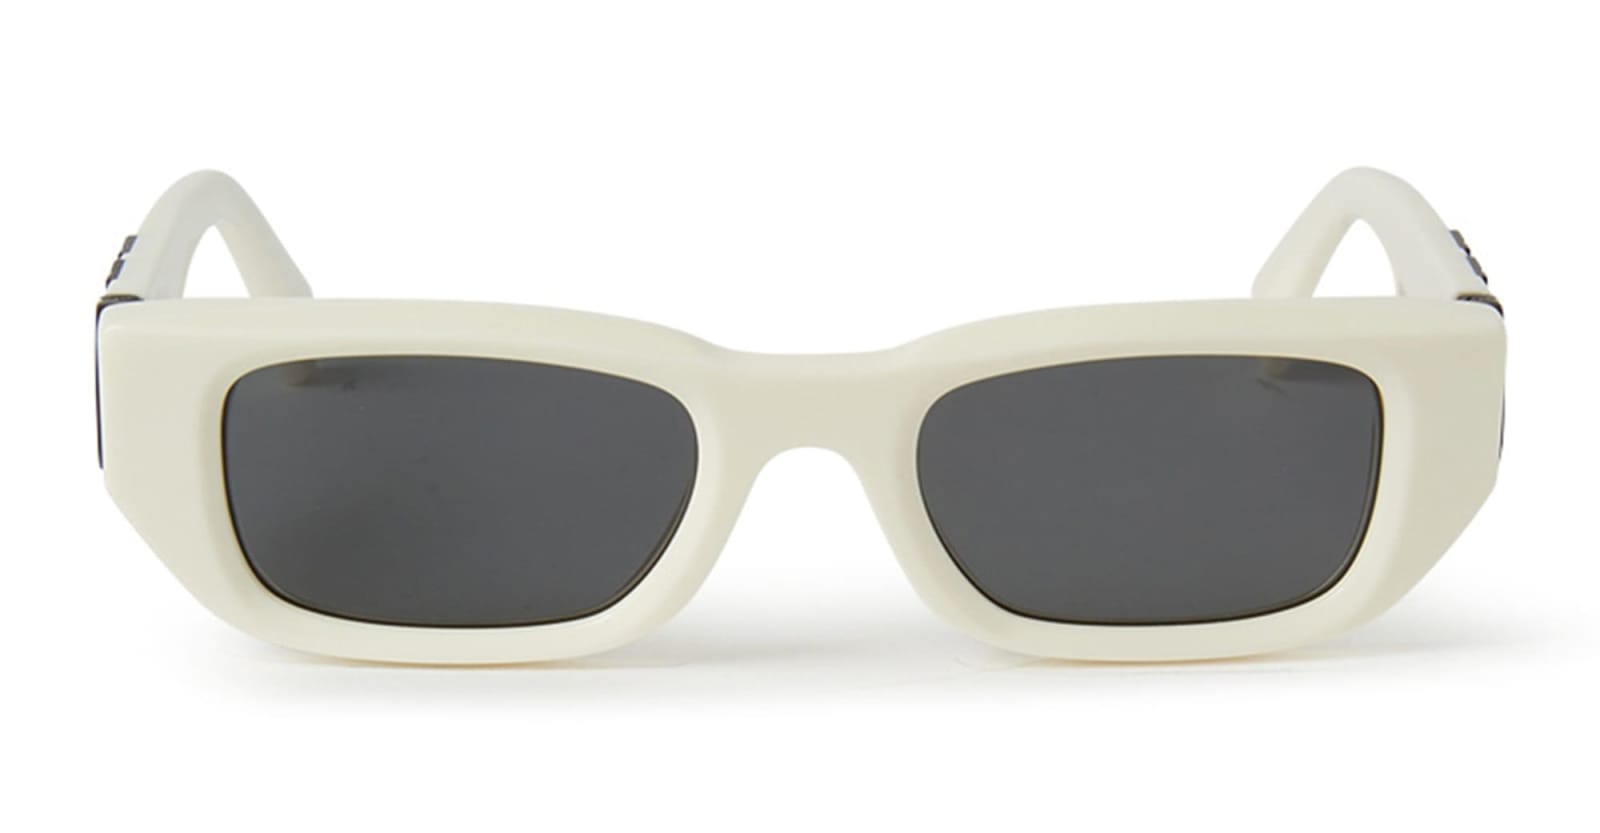 Fillmore Sunglasses